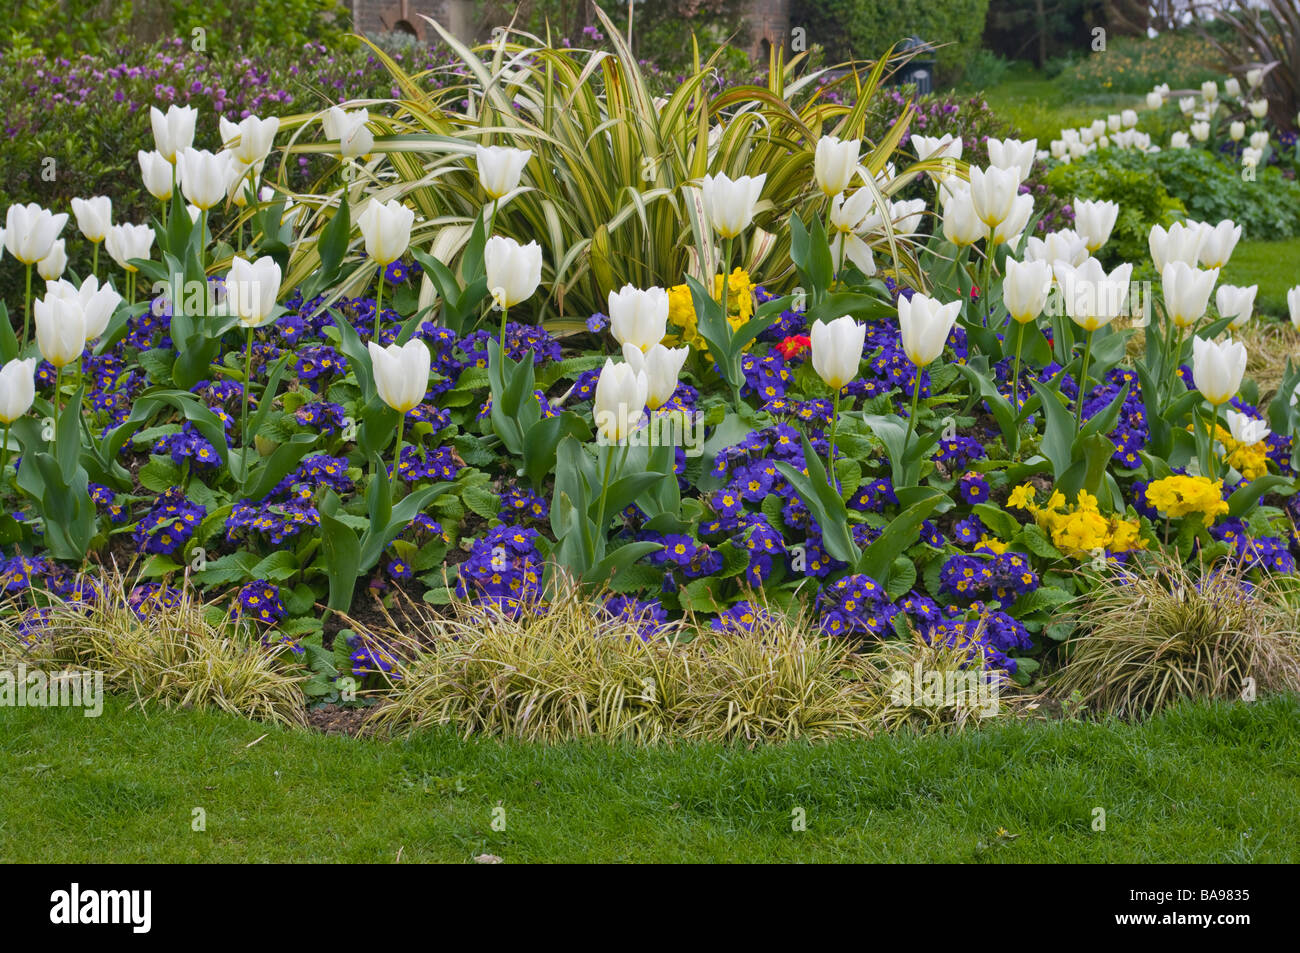 Cama de flores ornamentales de tulipanes blancos y azules prímulas primavera plantas de jardín huerto Foto de stock